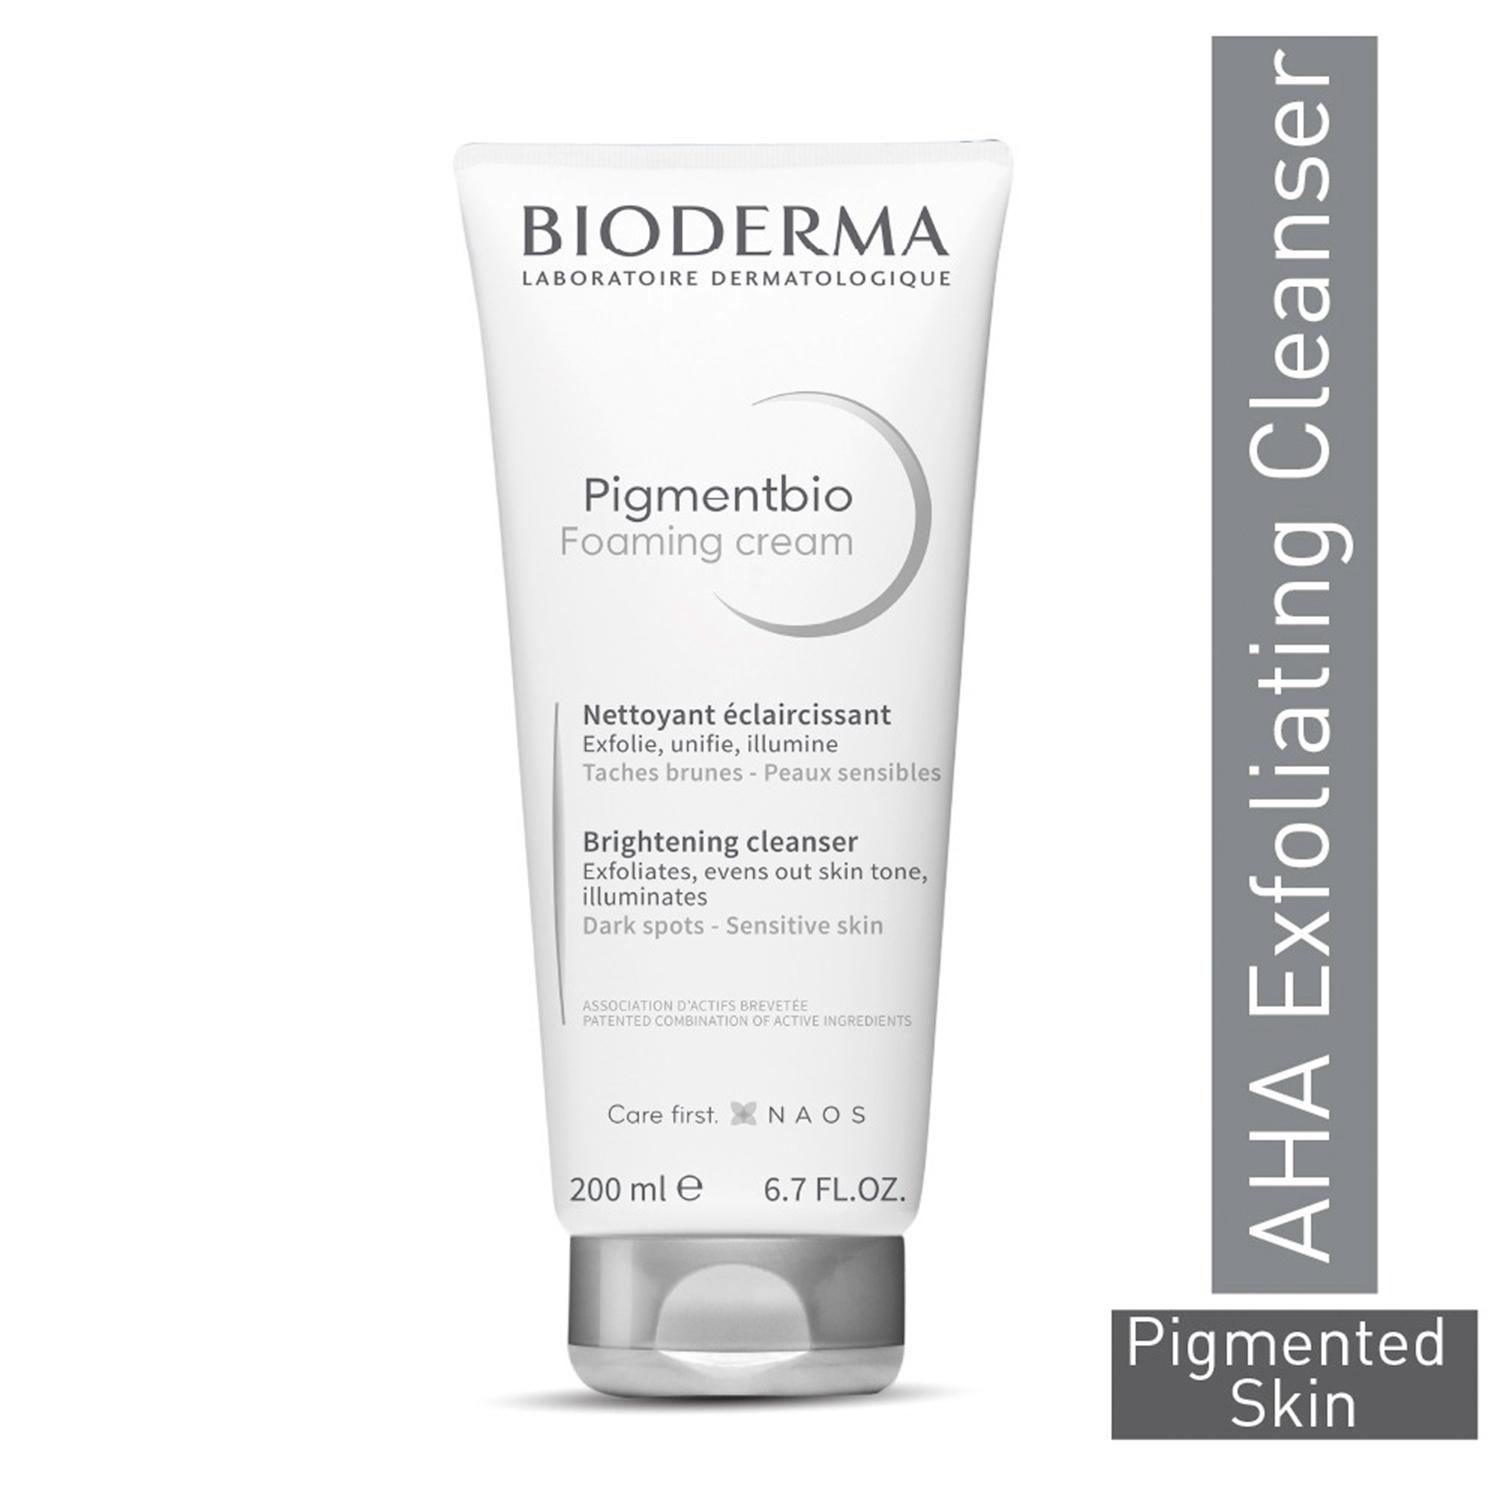 Bioderma Pigmentbio Foaming Cream Brightening Exfoliating Cleanser (200ml)